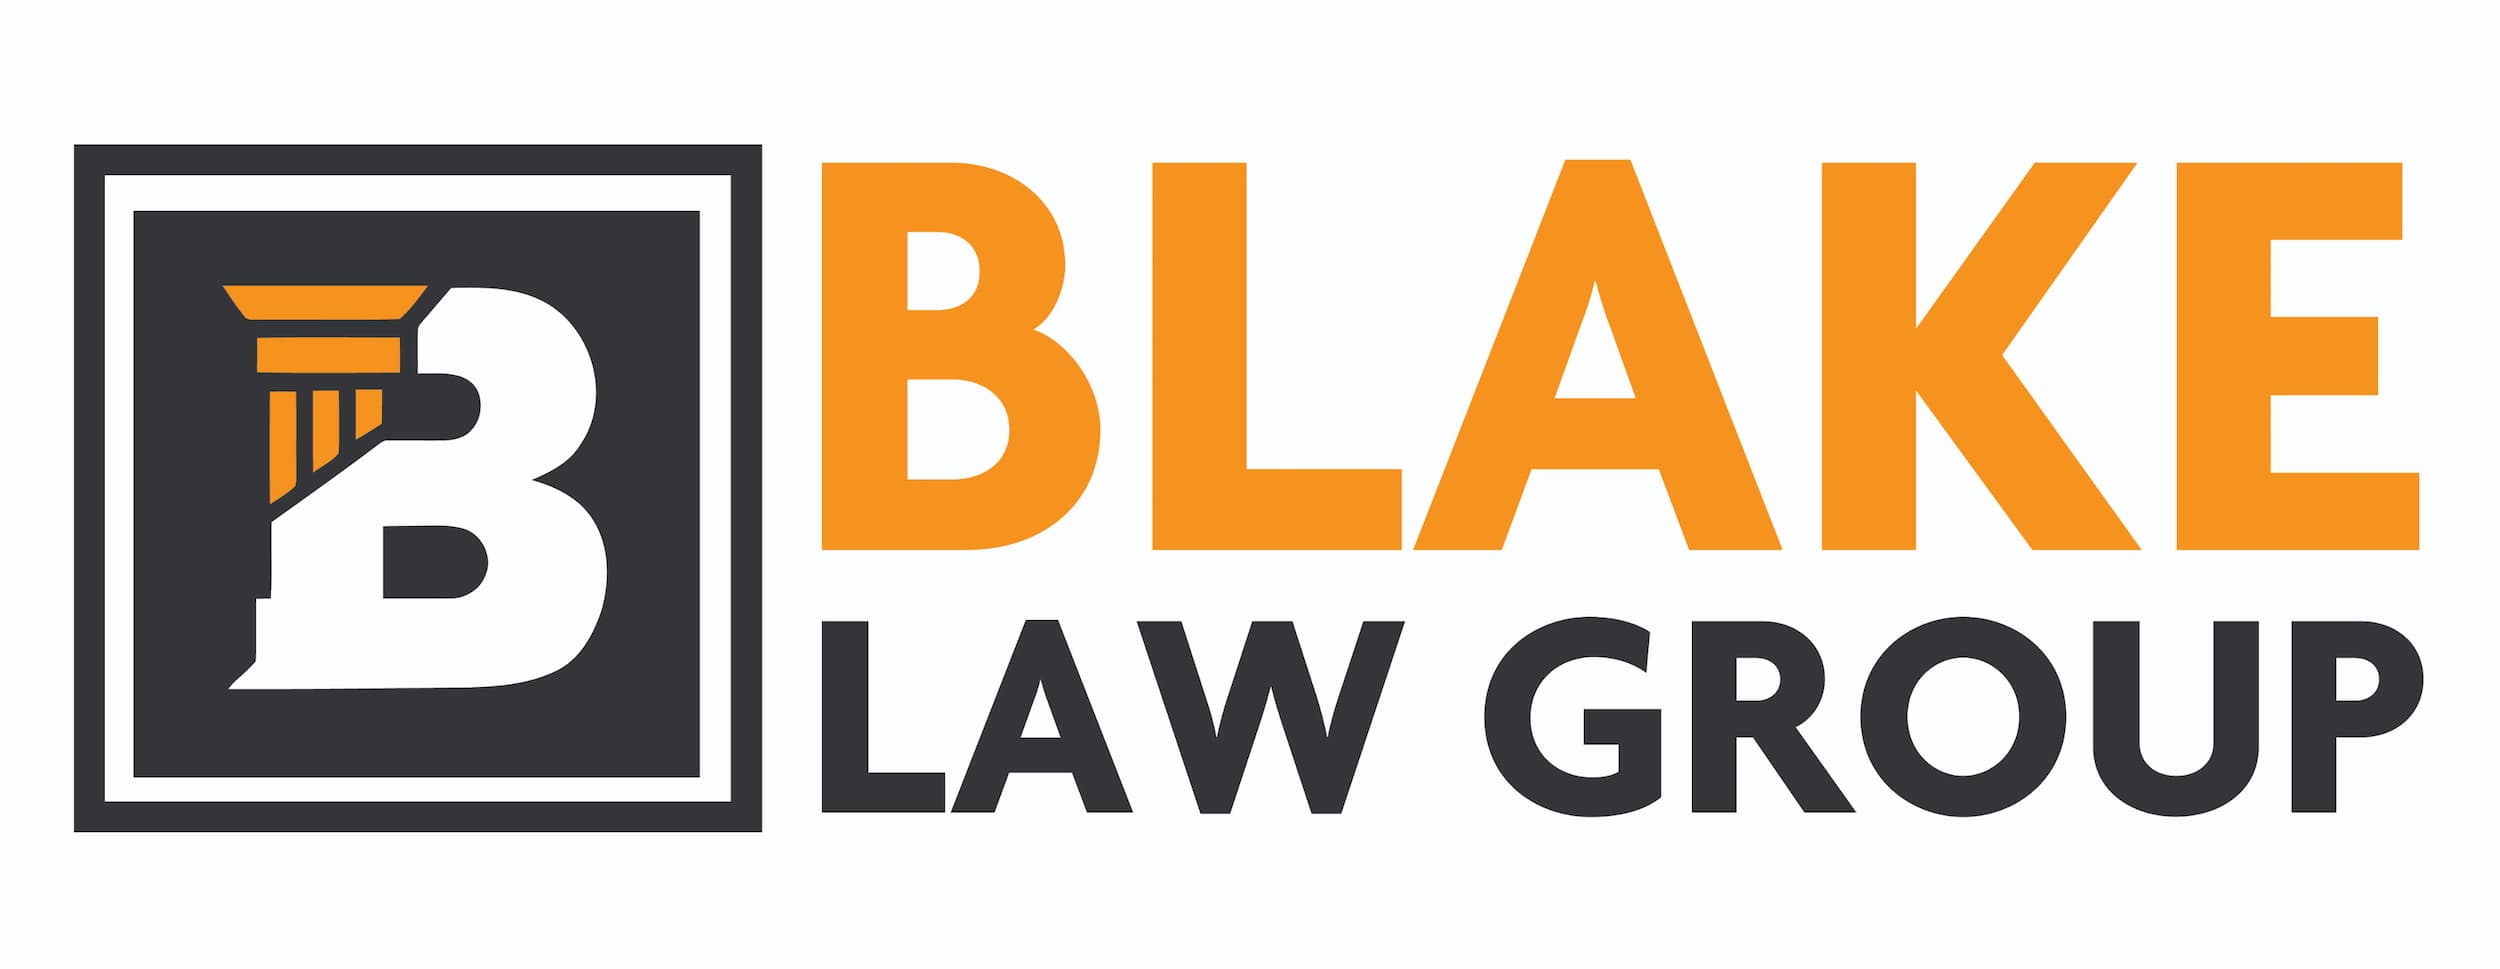 Blake Law Group logo